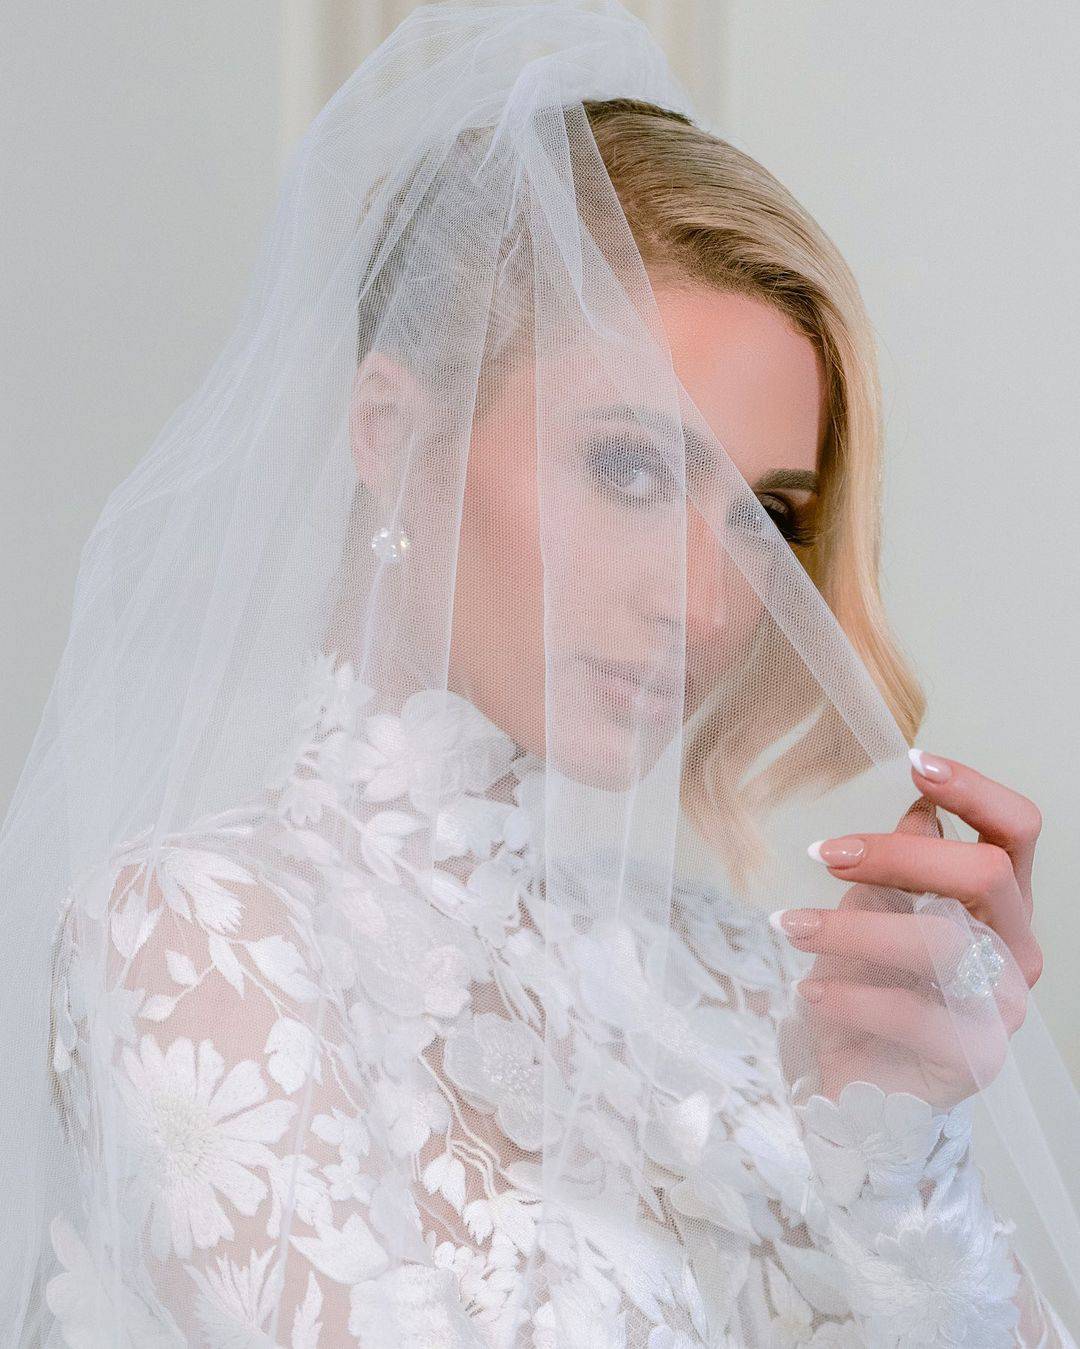 Udala se Paris Hilton: Brojne zvijezde stigle su na vjenčanje